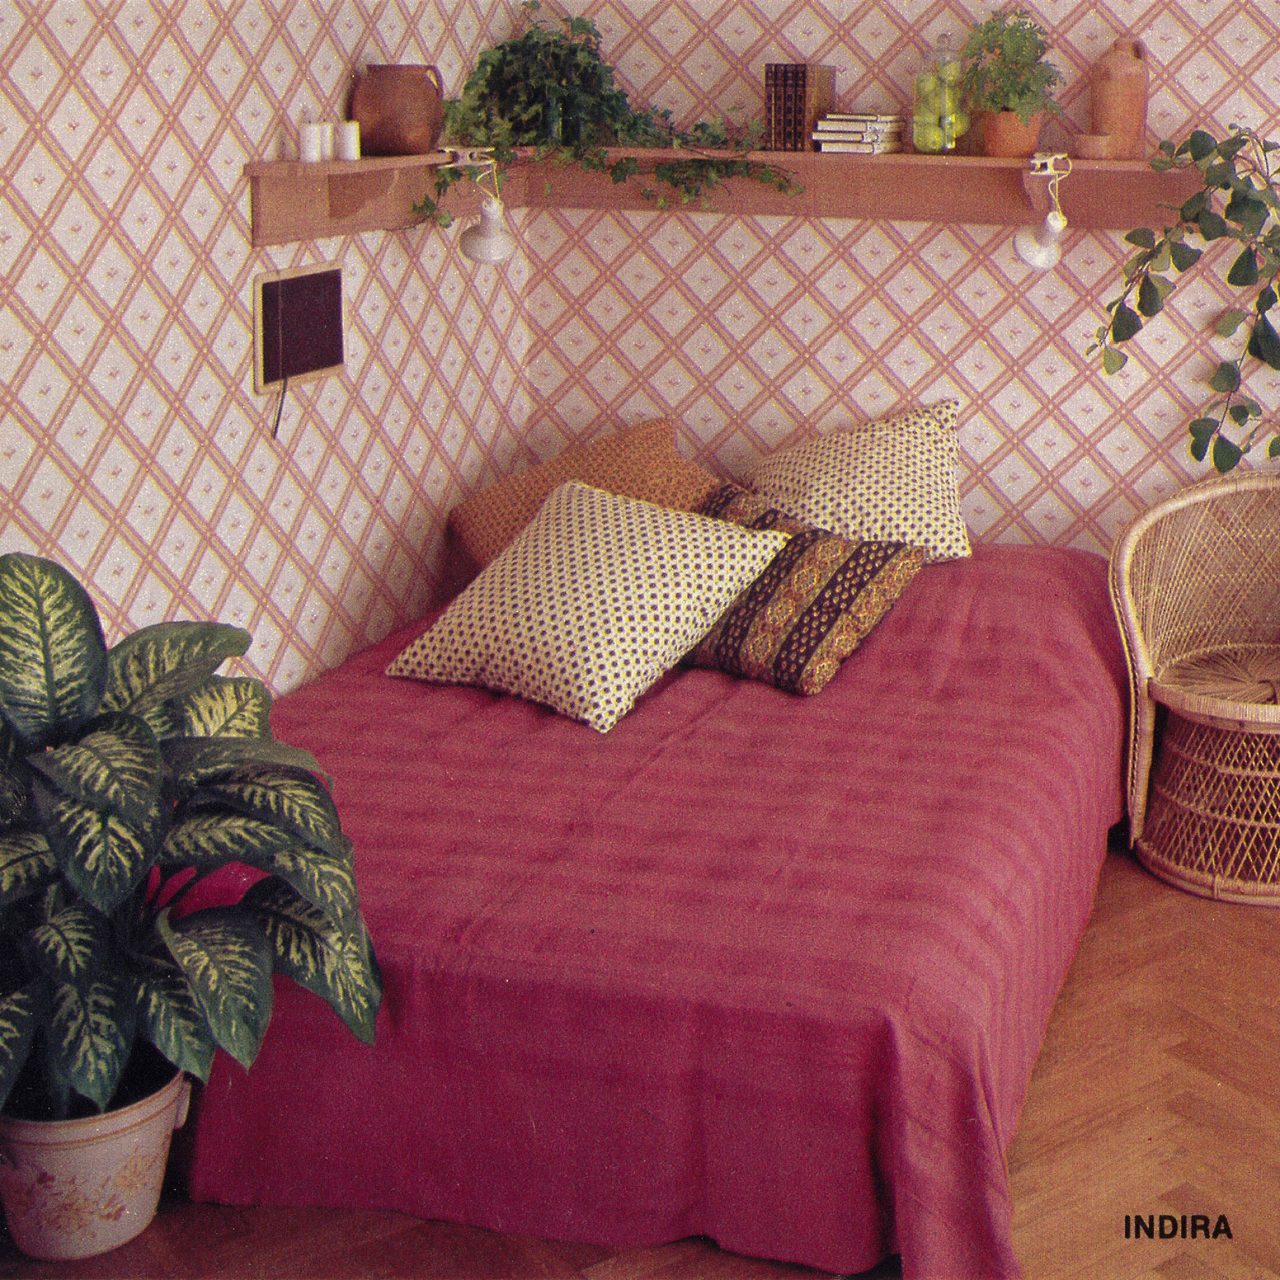 Bild i IKEA katalogen 1979, sovrum med furusäng bäddad med mörkrosa överkast, INDIRA, och tapet med grafiskt mönster, STRAM.